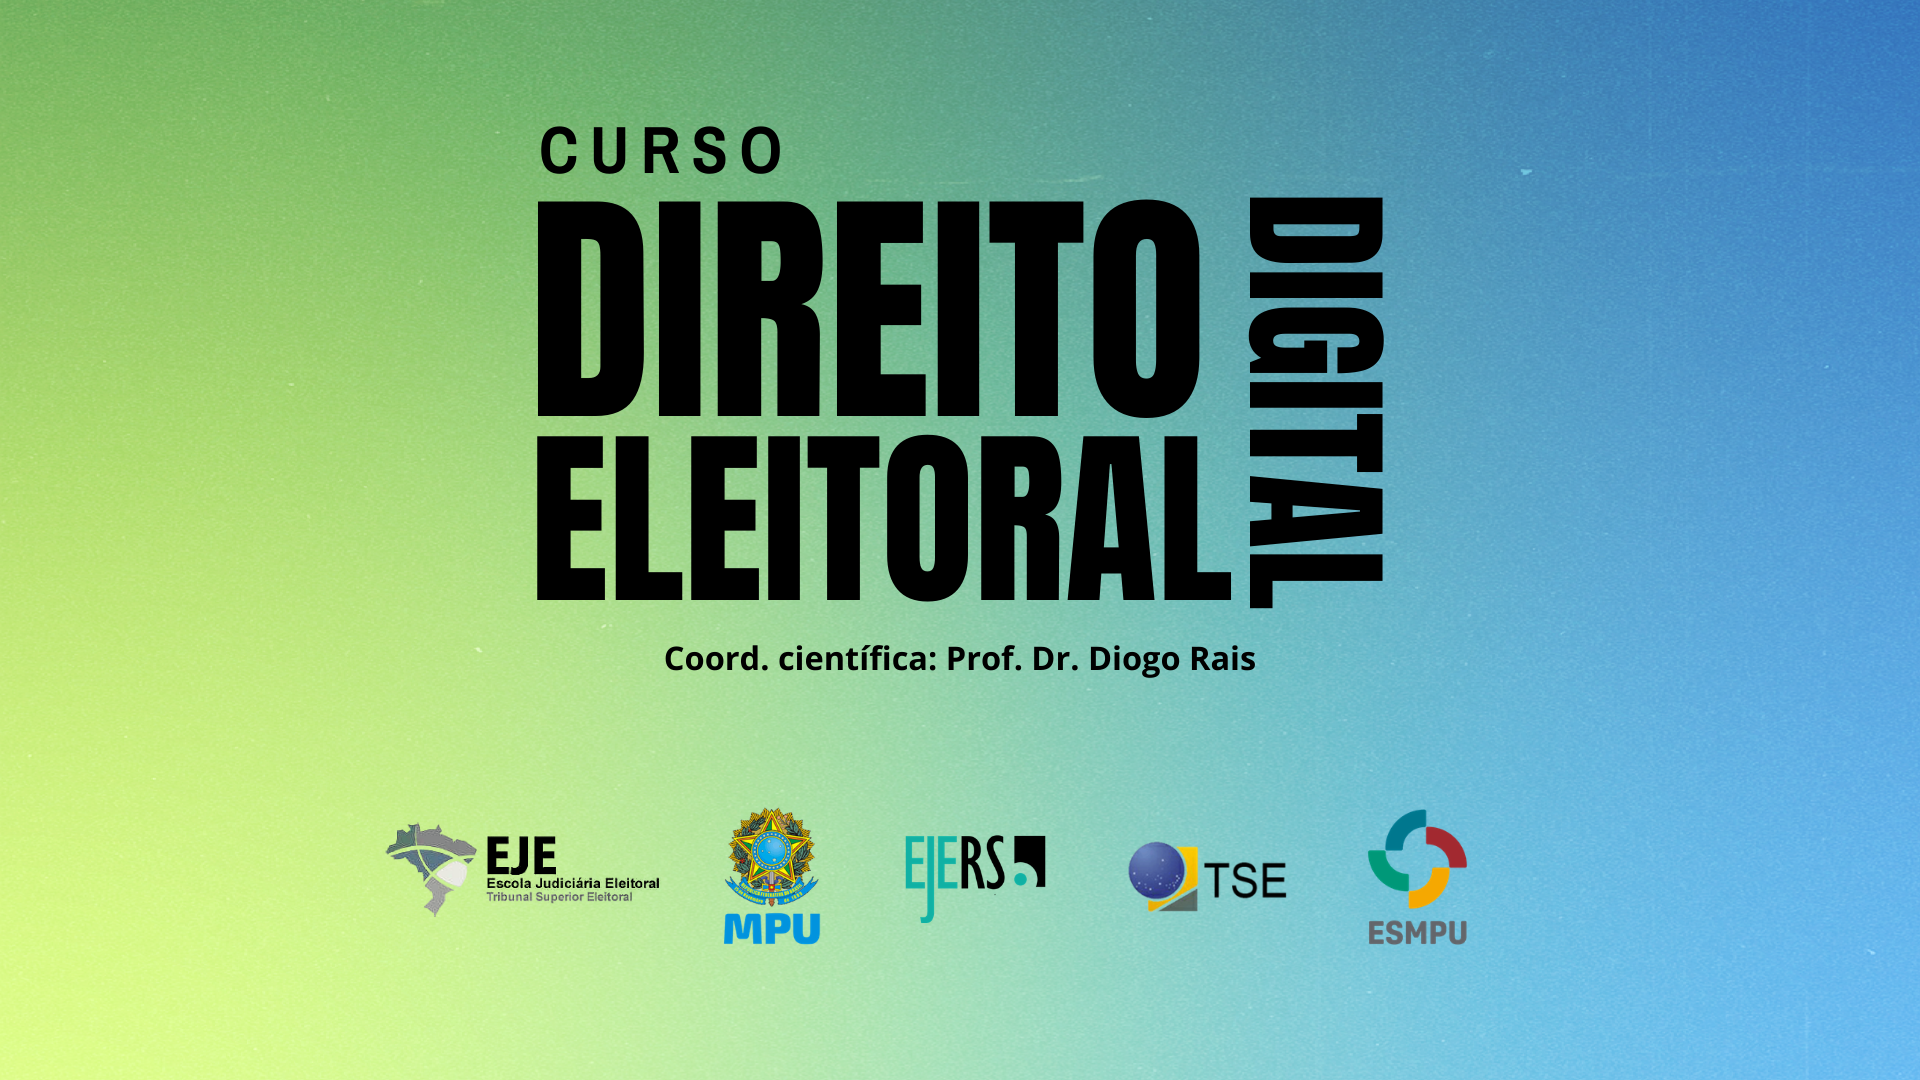 Curso de Direito Eleitoral Digital